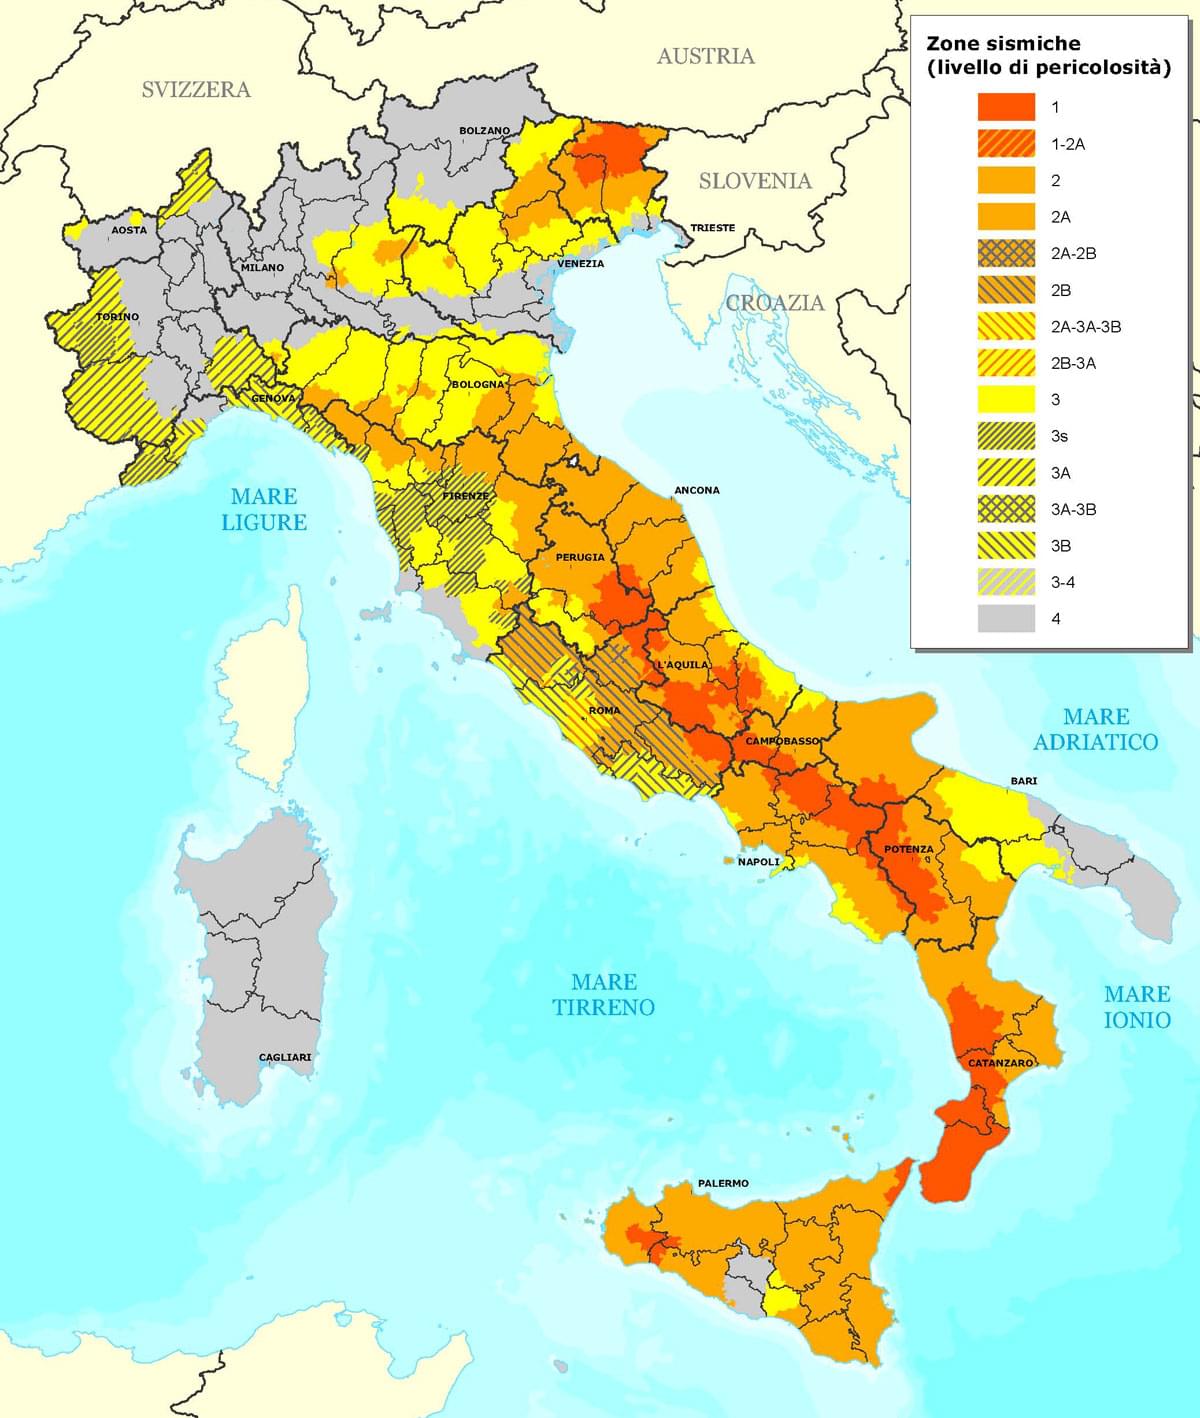 Italian earthquakes, earthquakes in italy, earth tremors italy, seismic activity italy, italian seismic zones